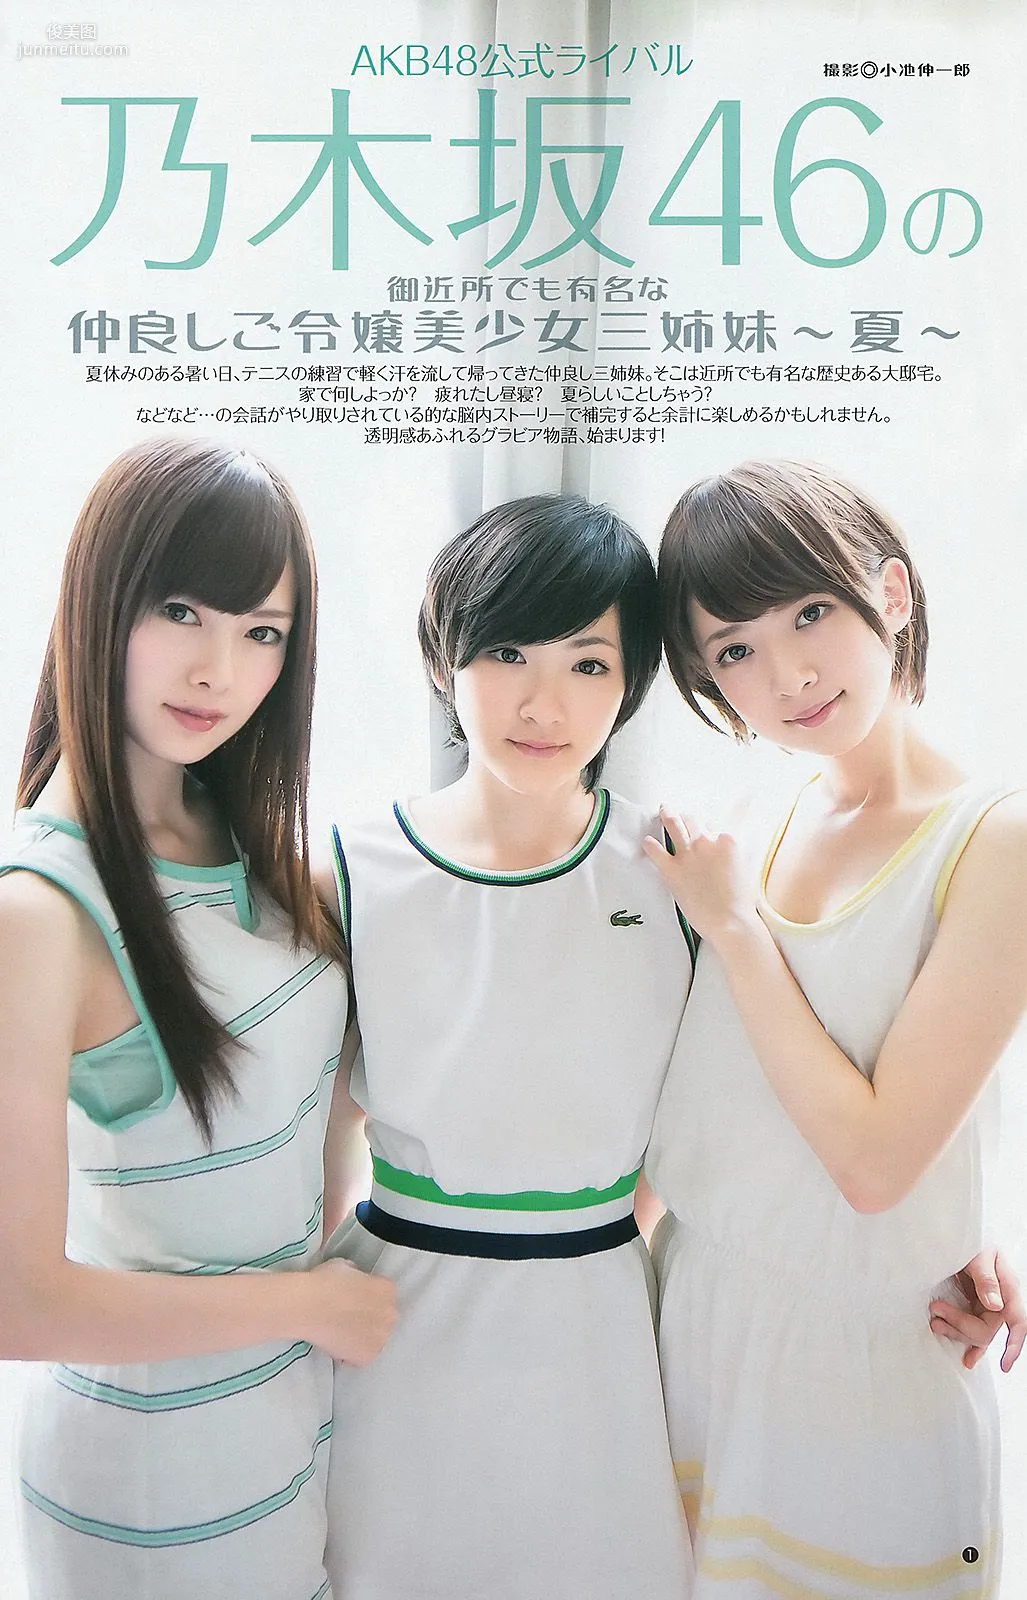 大島優子 乃木坂46 AKB48 ウェイティングガールズ [Weekly Young Jump] 2012年No.40 写真杂志9